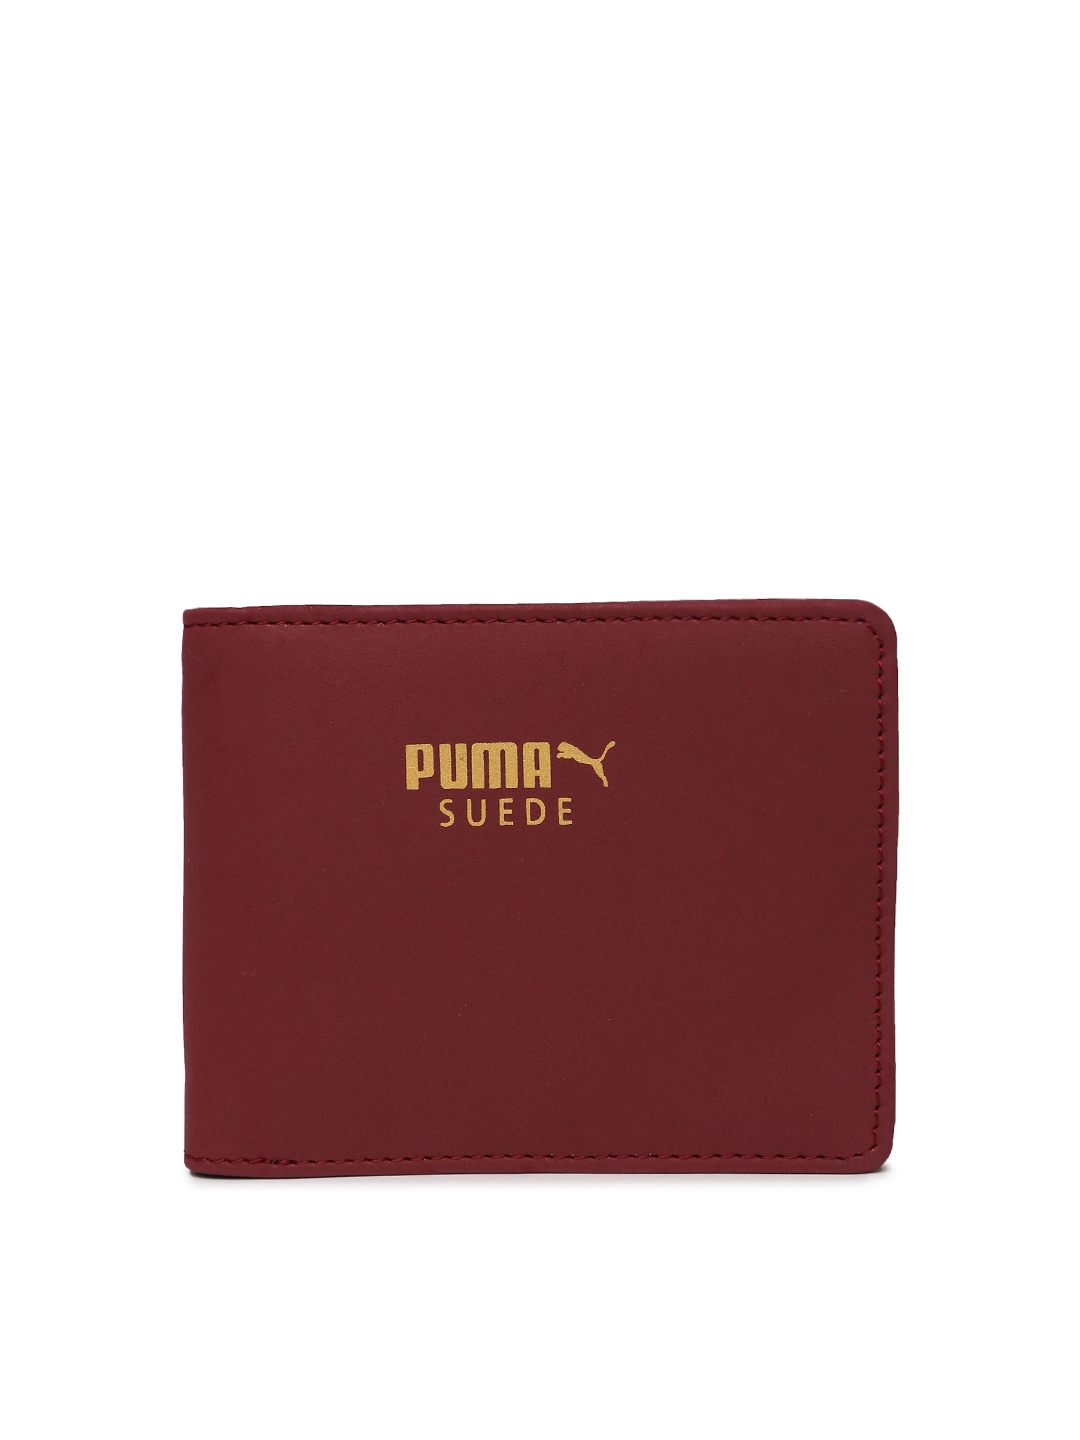 puma suede wallet